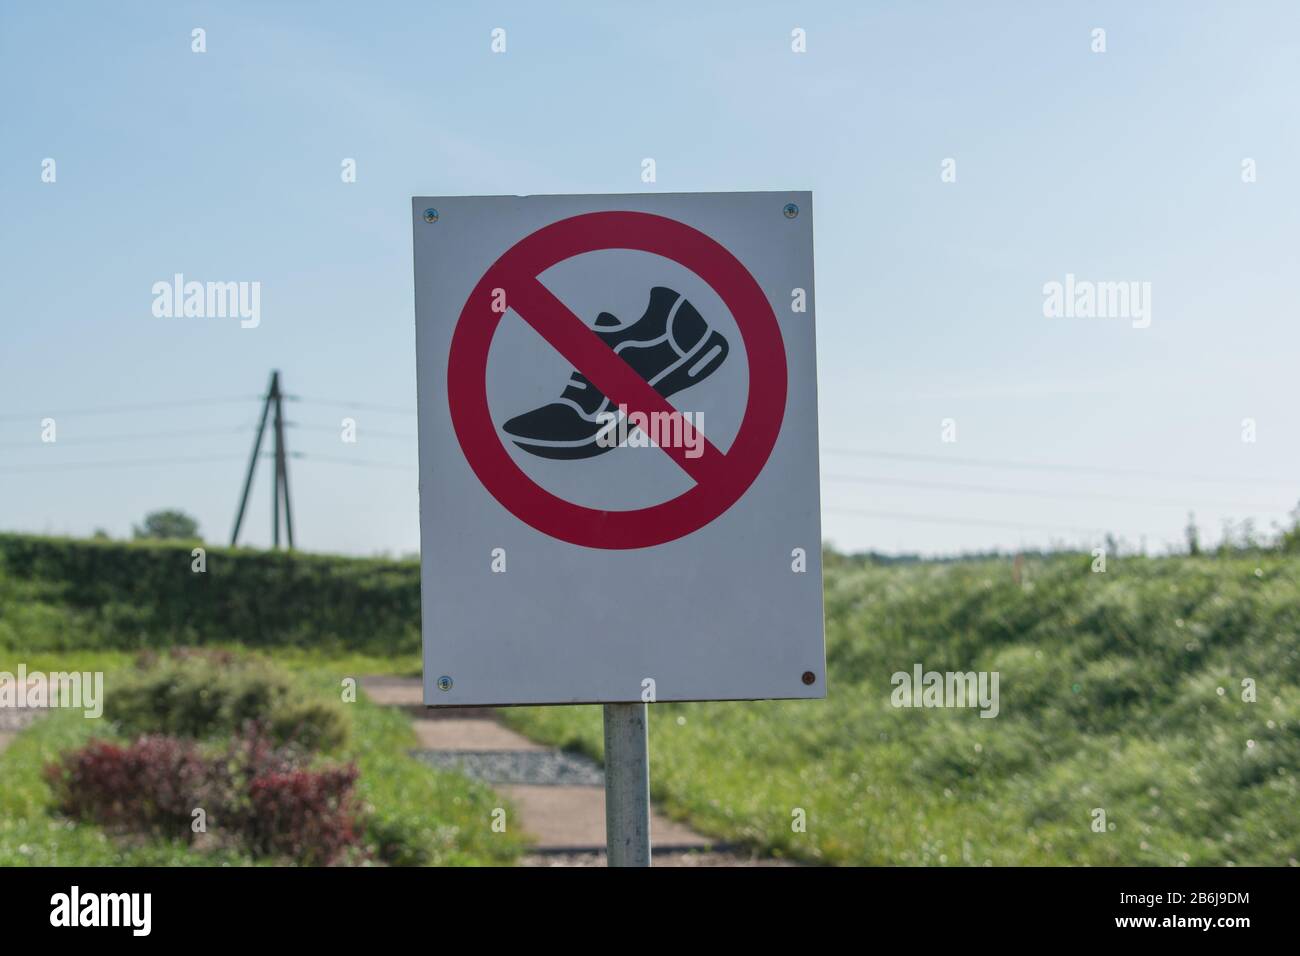 Es sind keine Schuhe oder andere Schuhe zulässig. Warnschild mit Leerzeichen für Text. Nicht mit dem Schrittschild versehen. Grünes Gras und blauer Himmel Hintergrund. Stockfoto